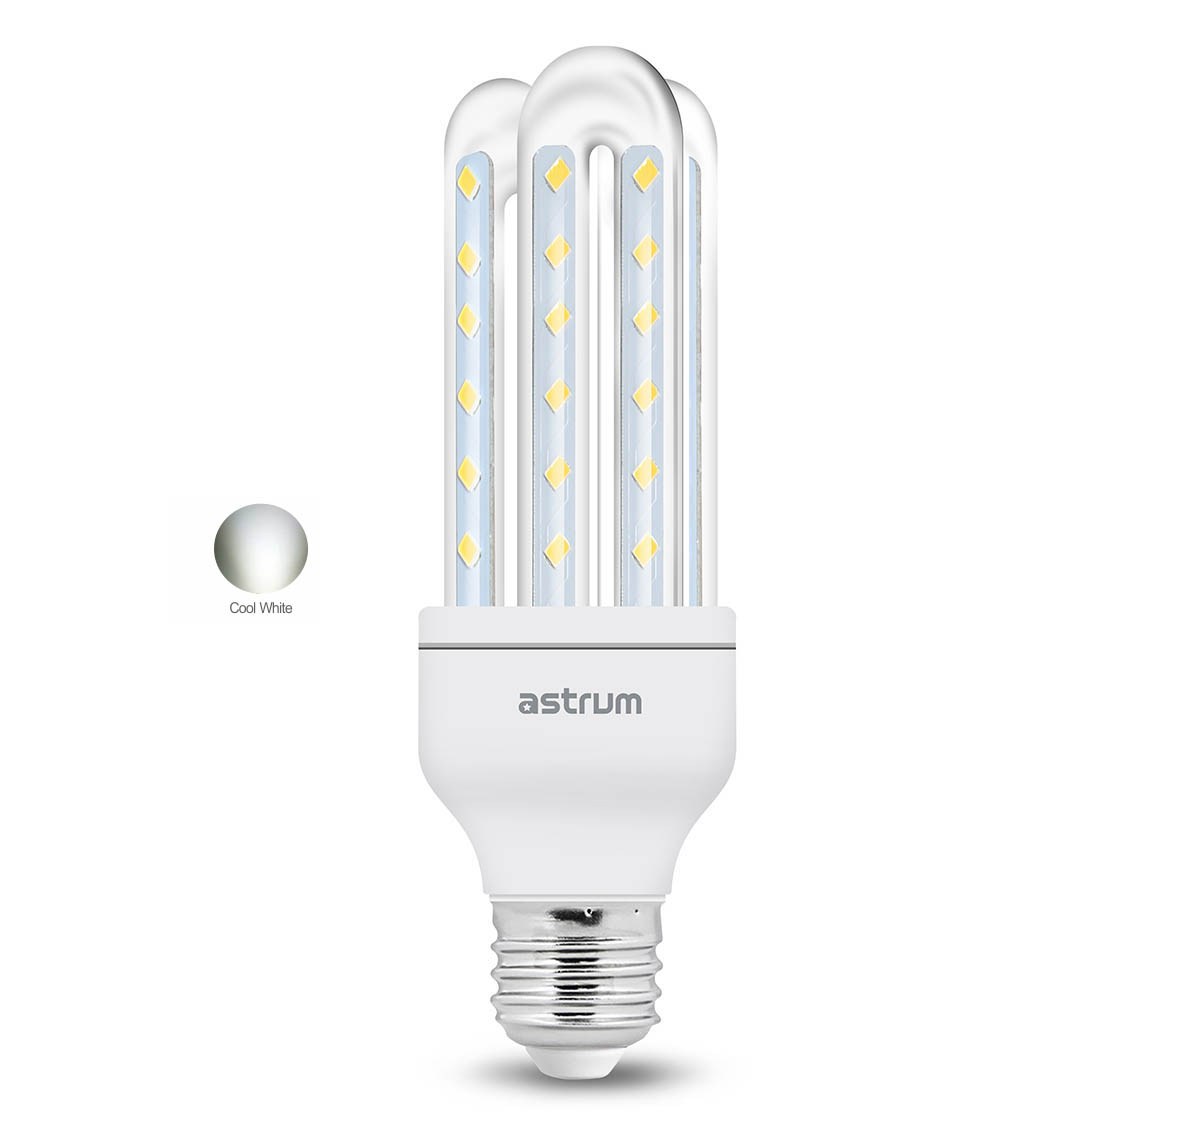 Astrum E27 K070 LED Corn Light (7W) – Cool White